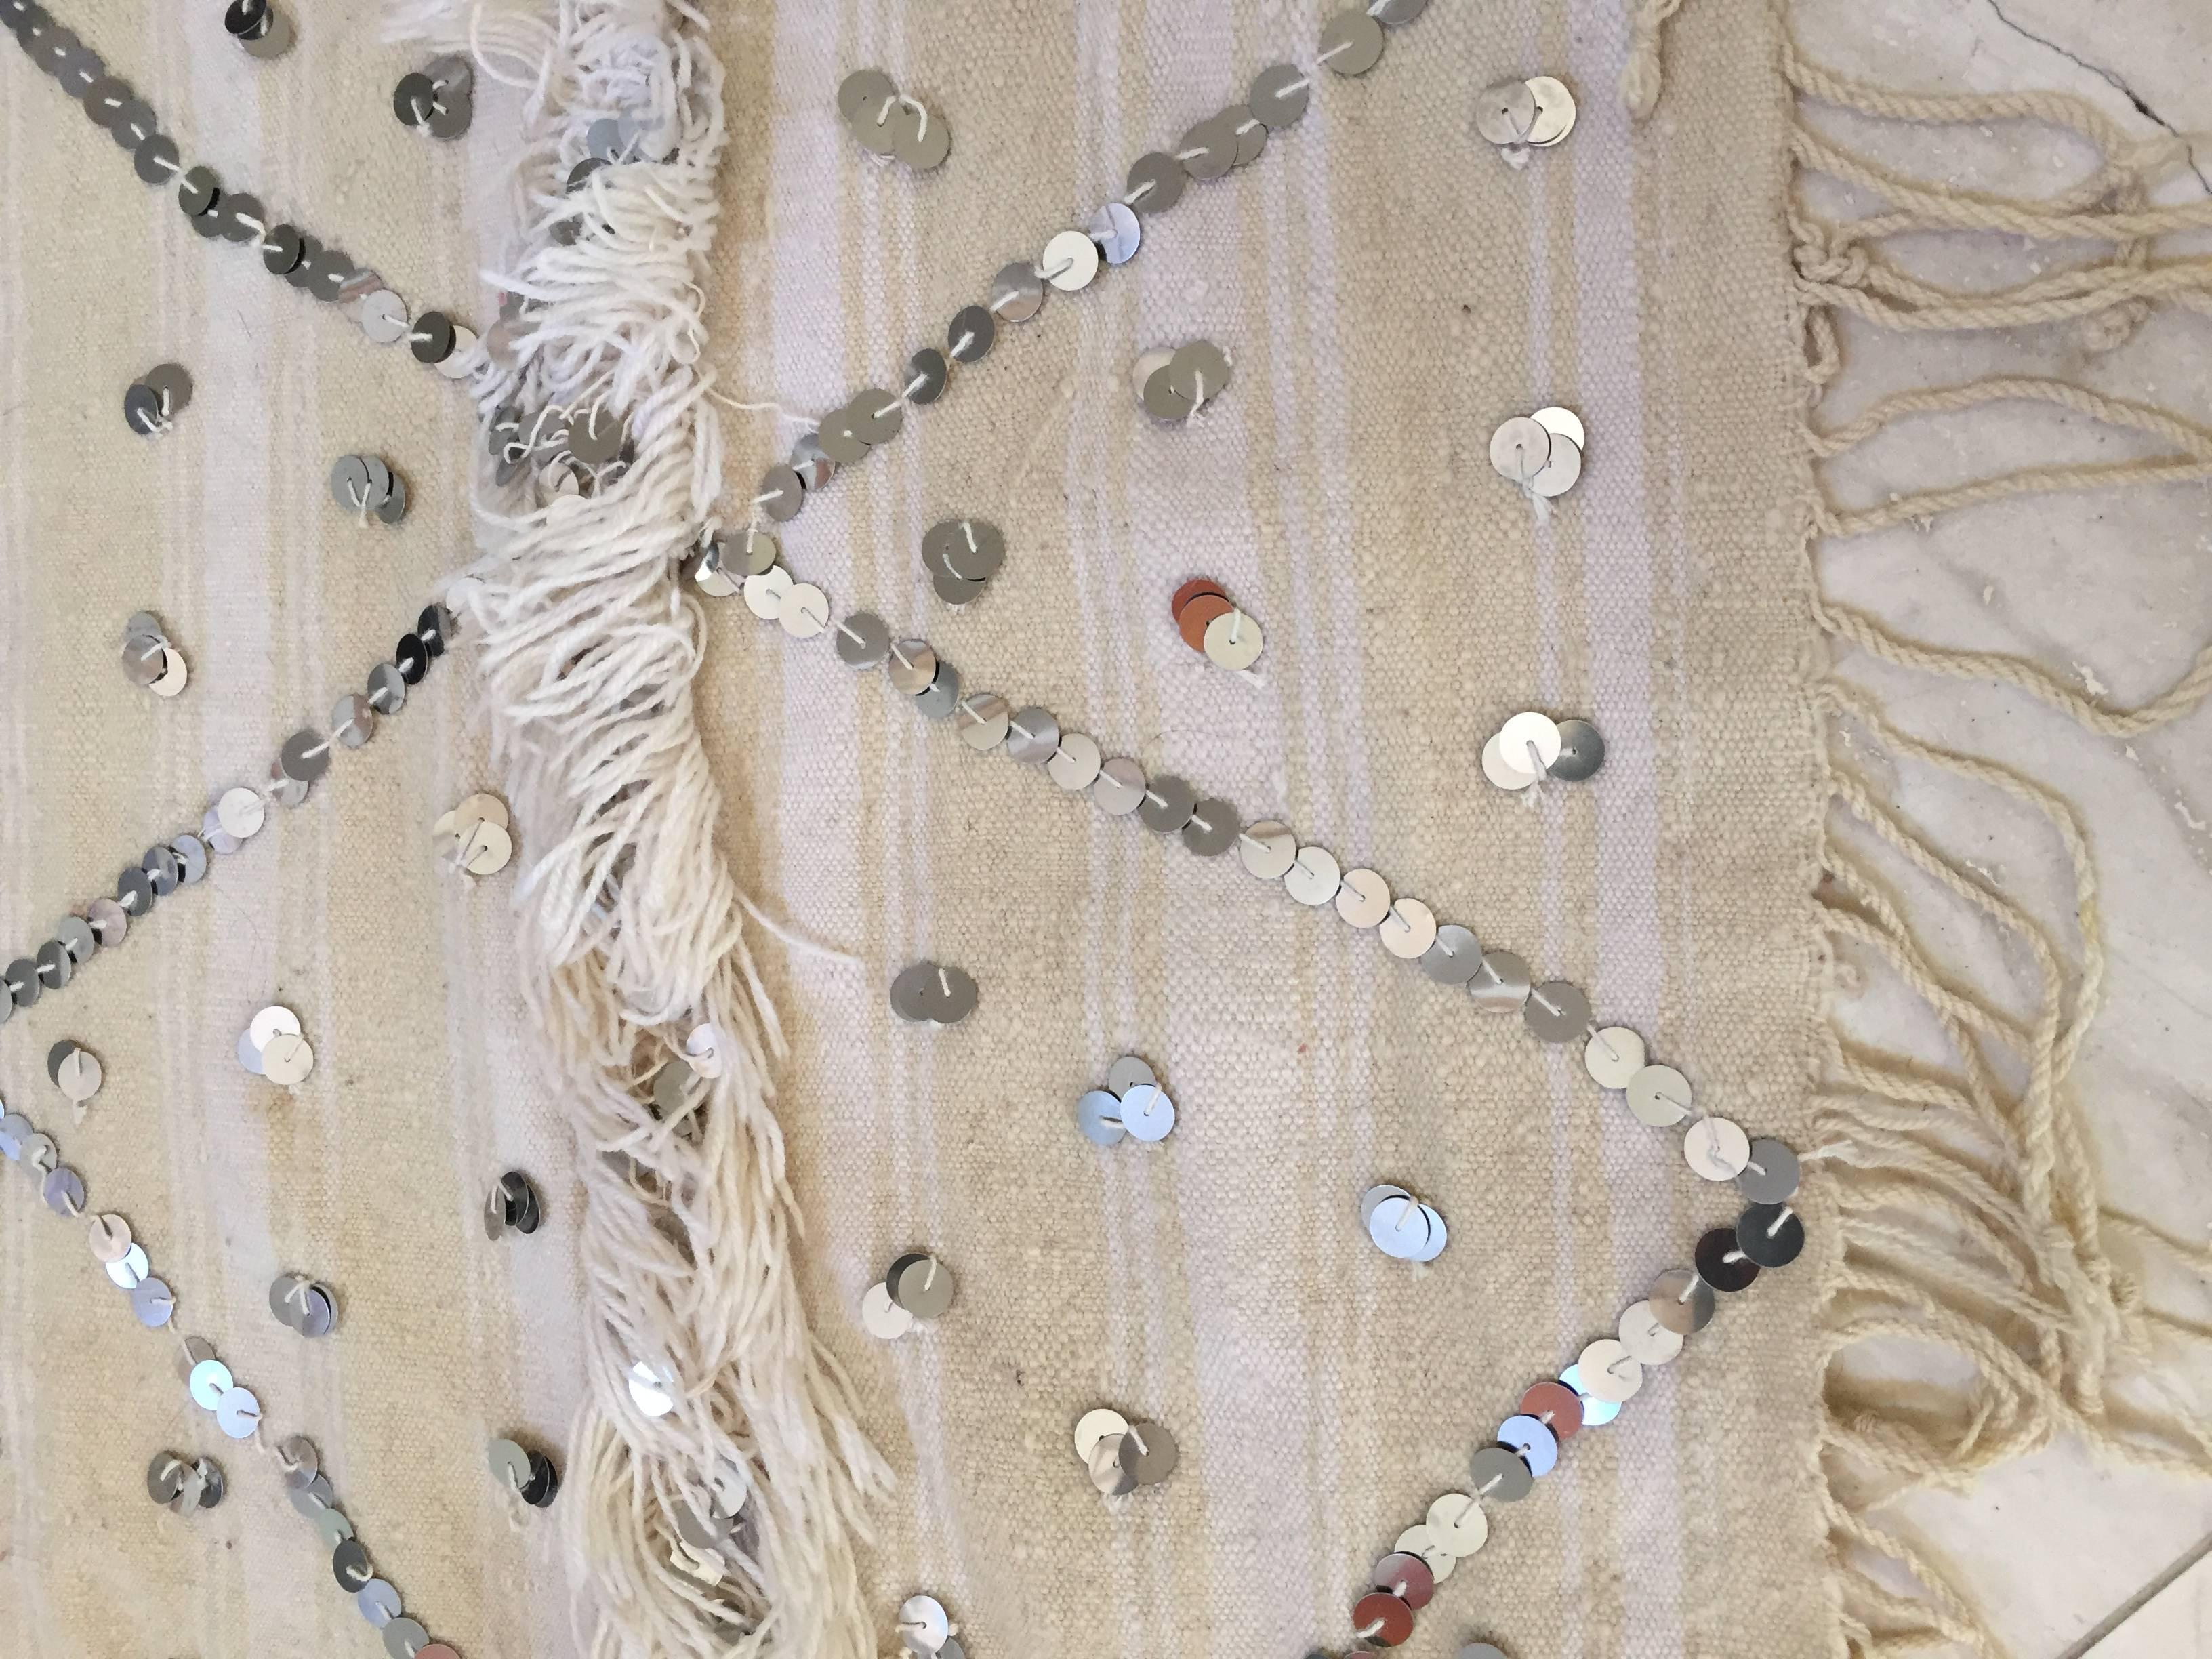 Grand châle tribal marocain original, mariage berbère, couverture. 
Les châles tribaux Zaiane intègrent des quantités de paillettes dans leur conception pour obtenir un effet décoratif impressionnant sur les bandes alternées de fils de laine et de